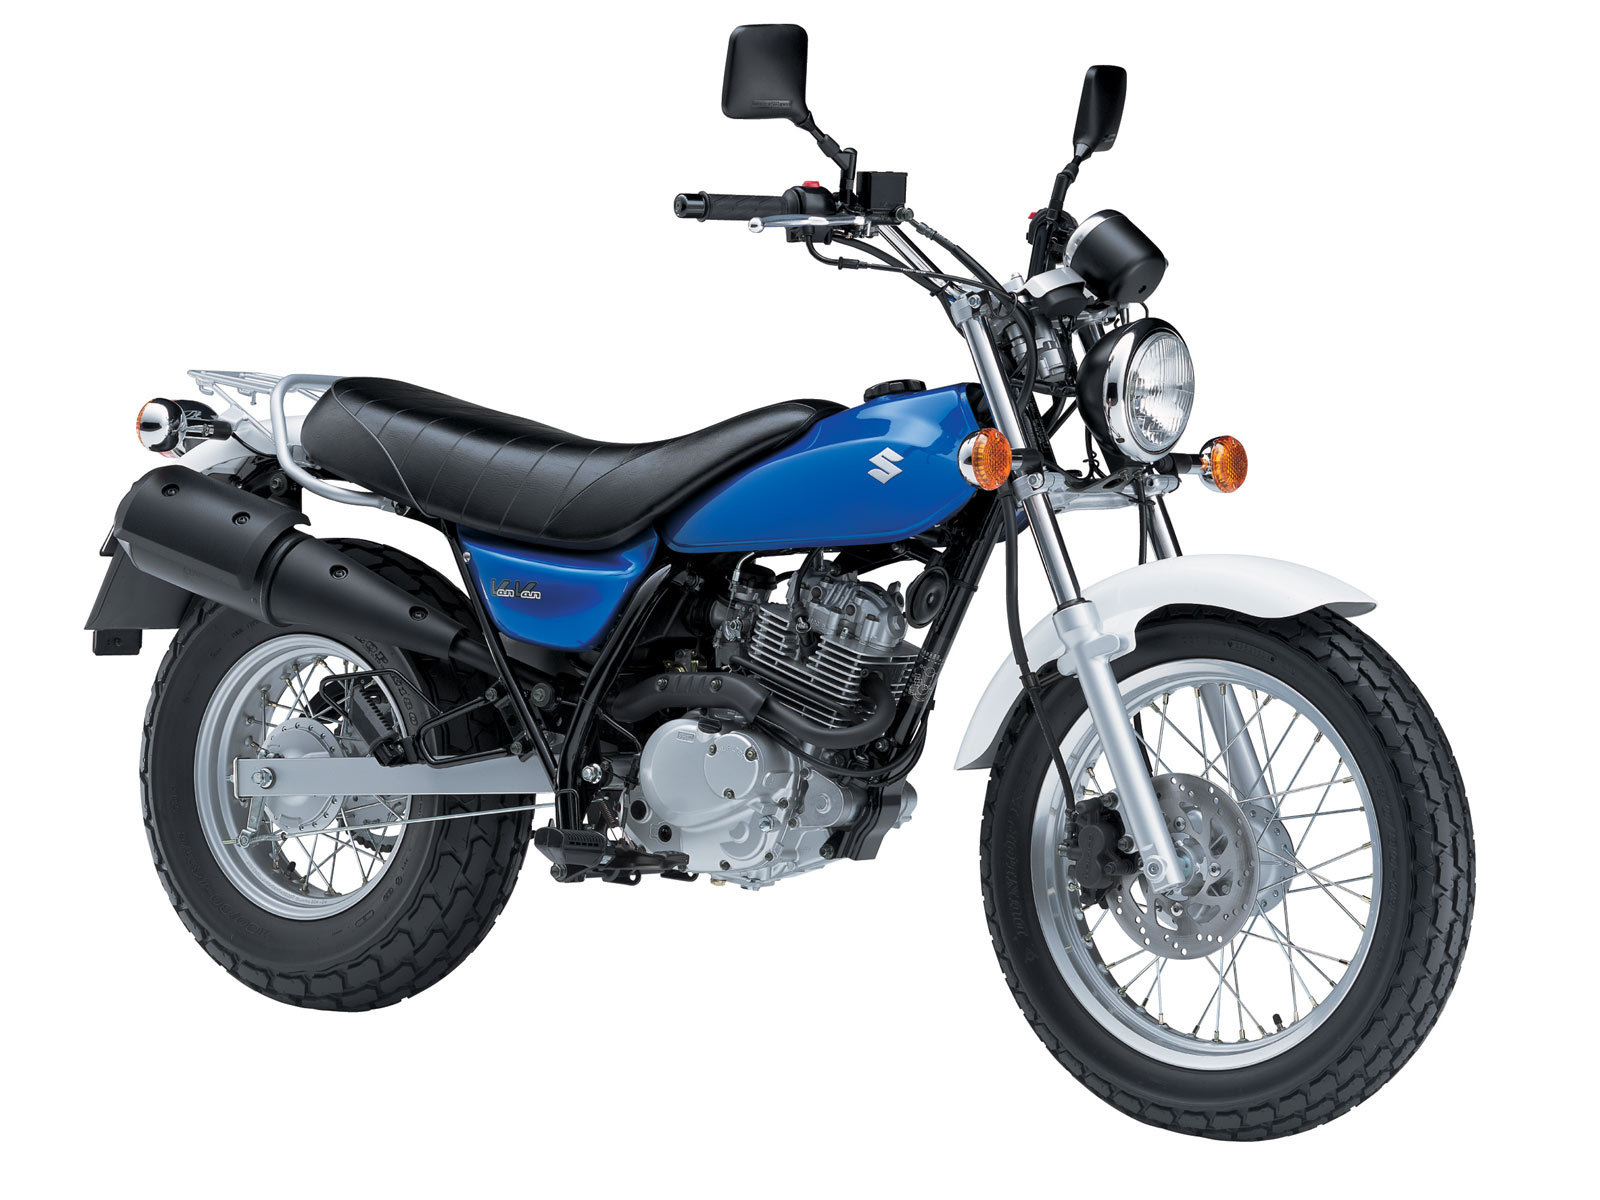 Test drive a motorcycle Suzuki RV 125 